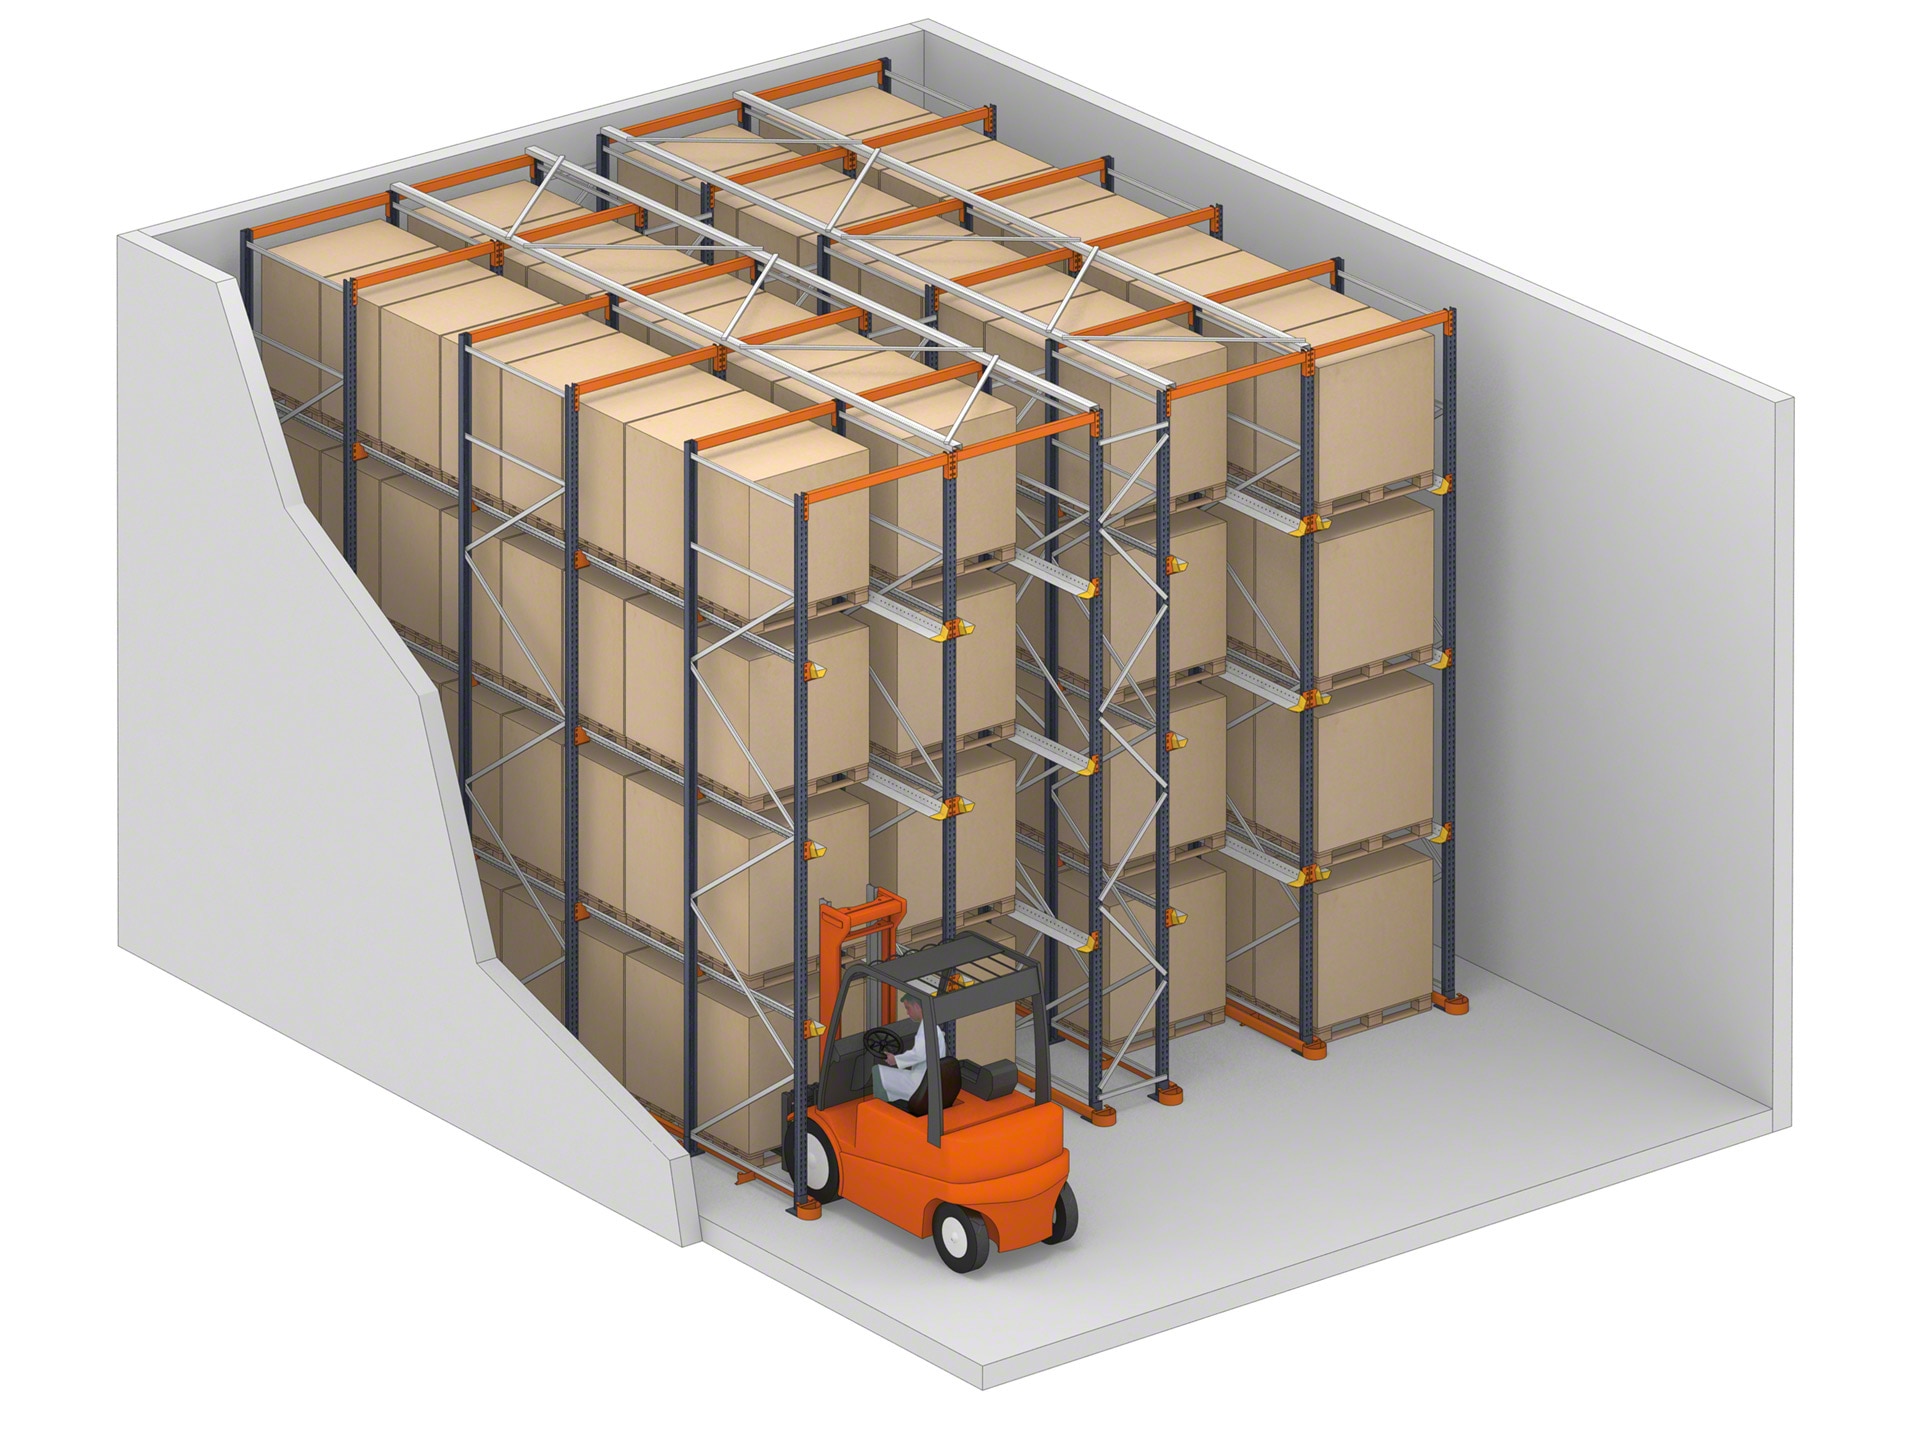 نظام القيادة عبارة عن أرفف حيث يمكن للشاحنات الوصول إلى البضائع عبر قنوات التخزين الخاصة بهم